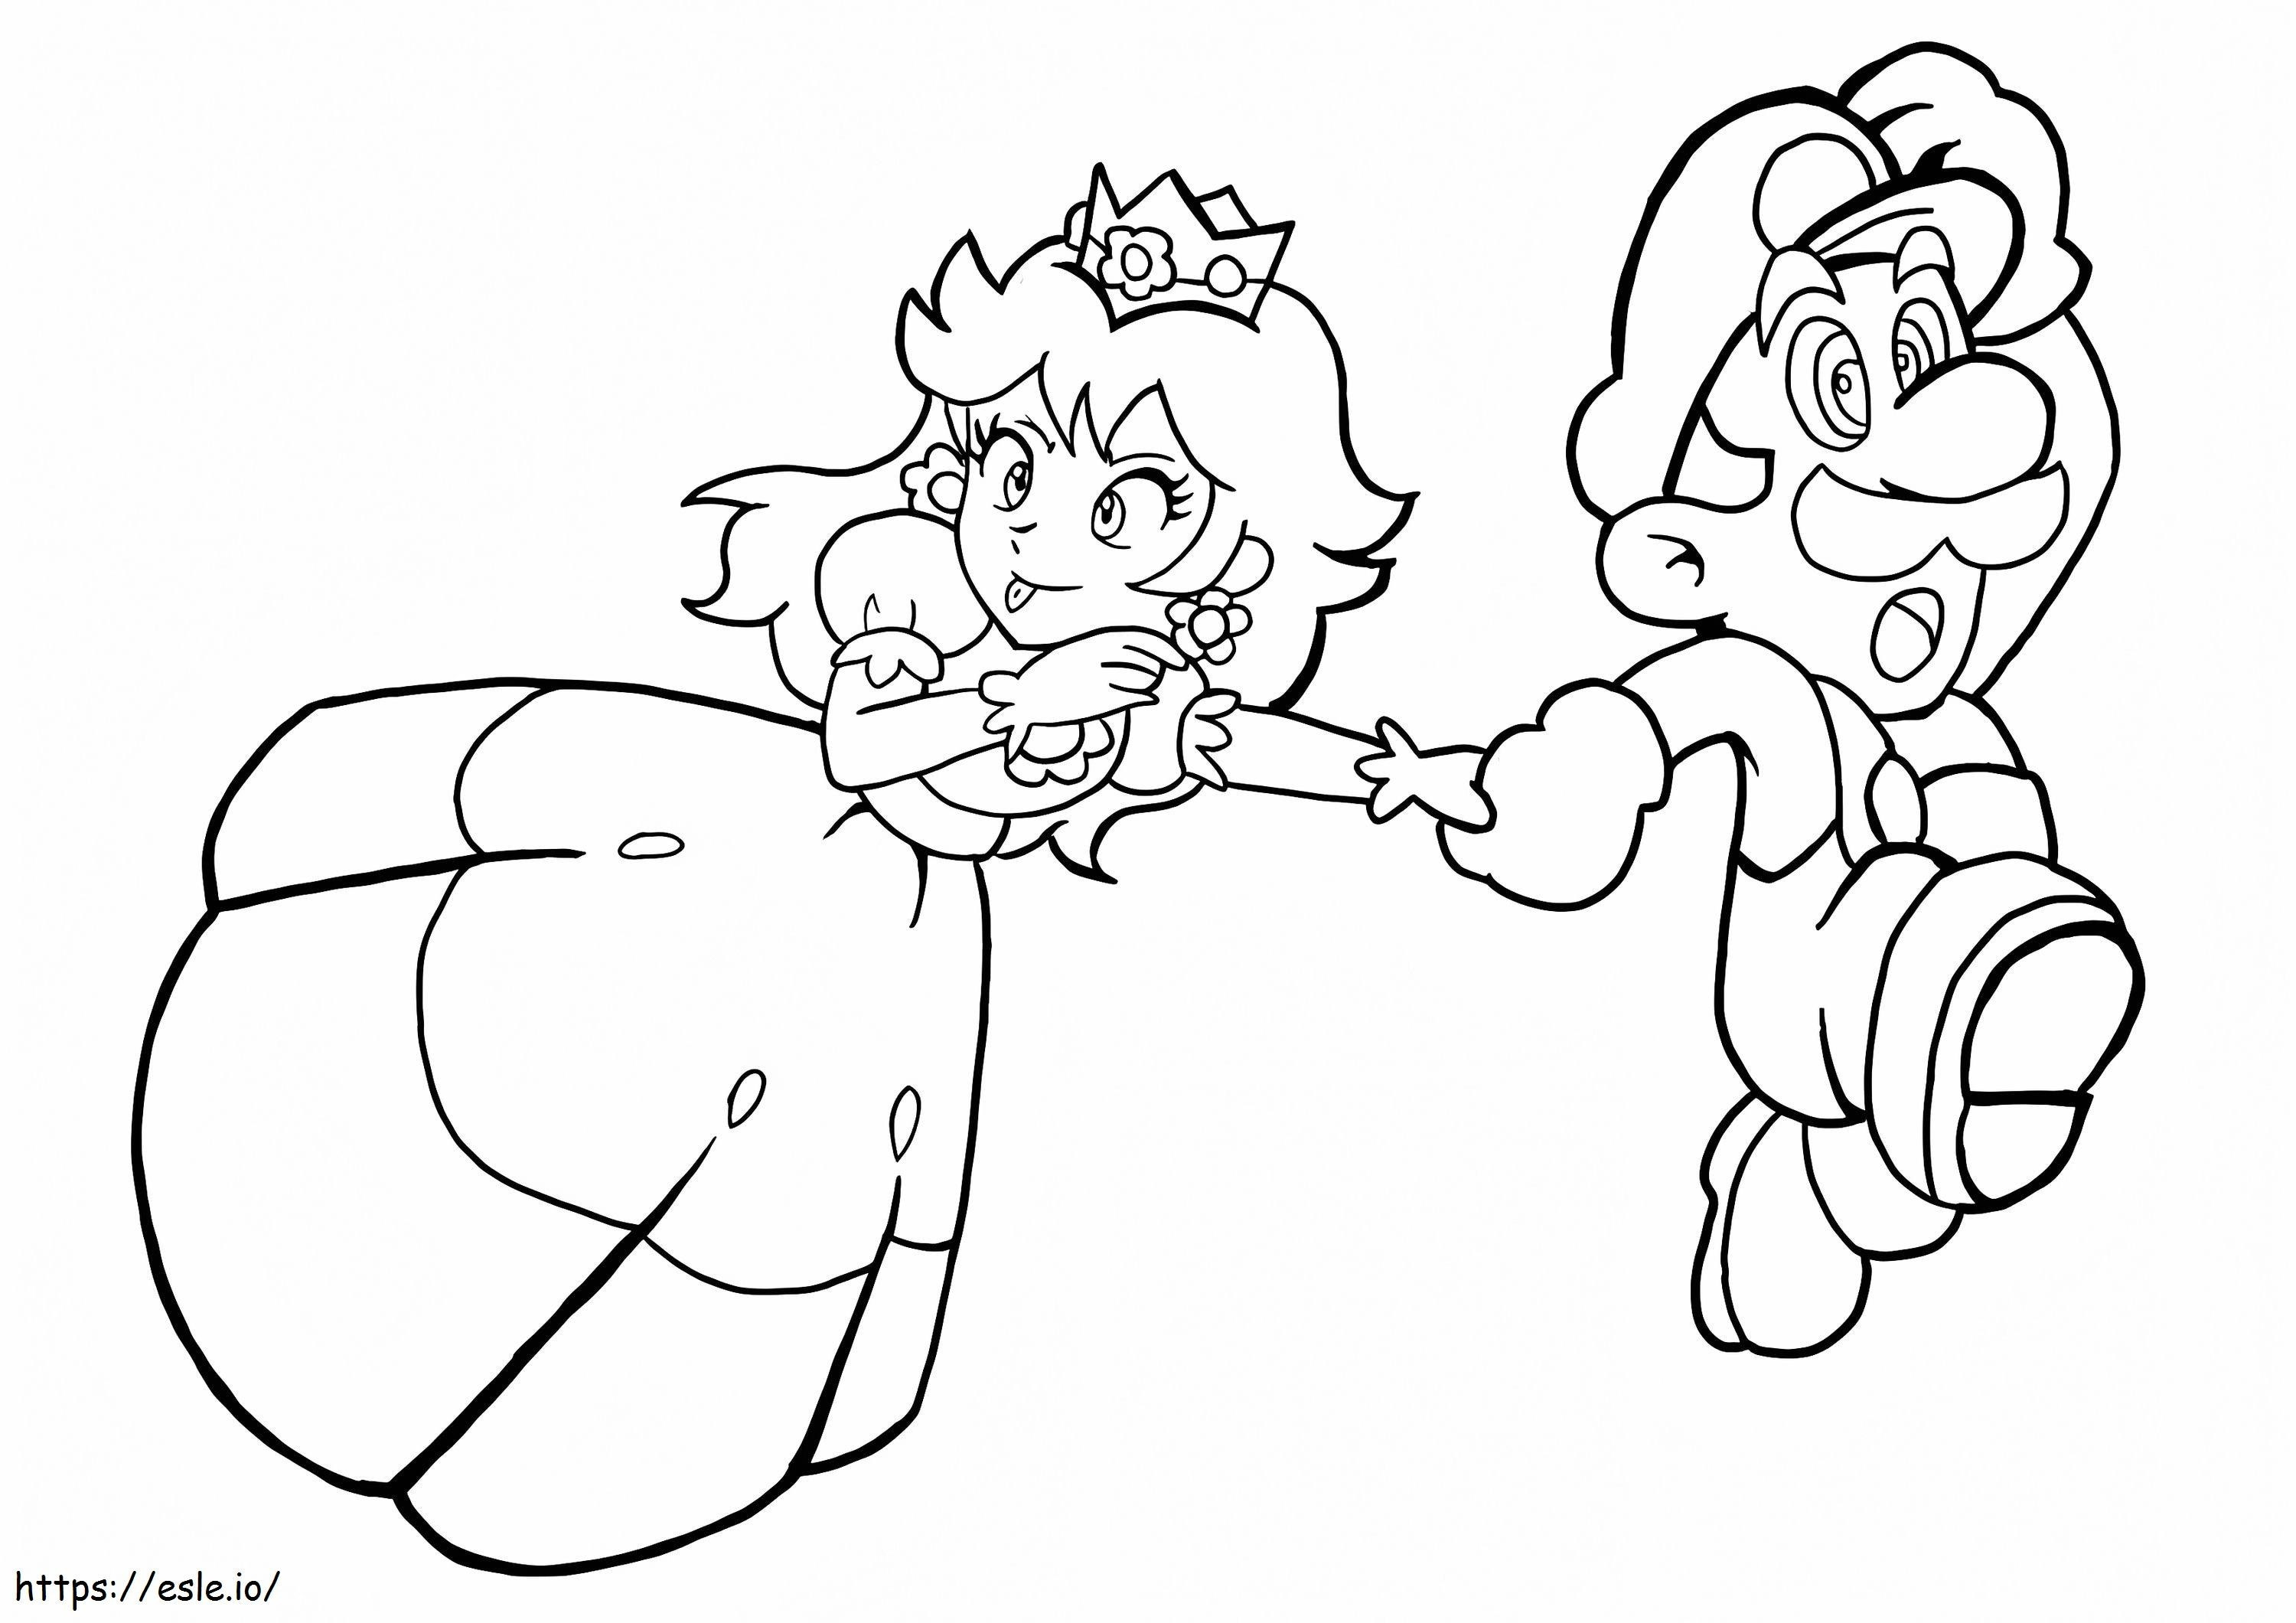 Divertente la principessa Peach e Mario che corrono da colorare